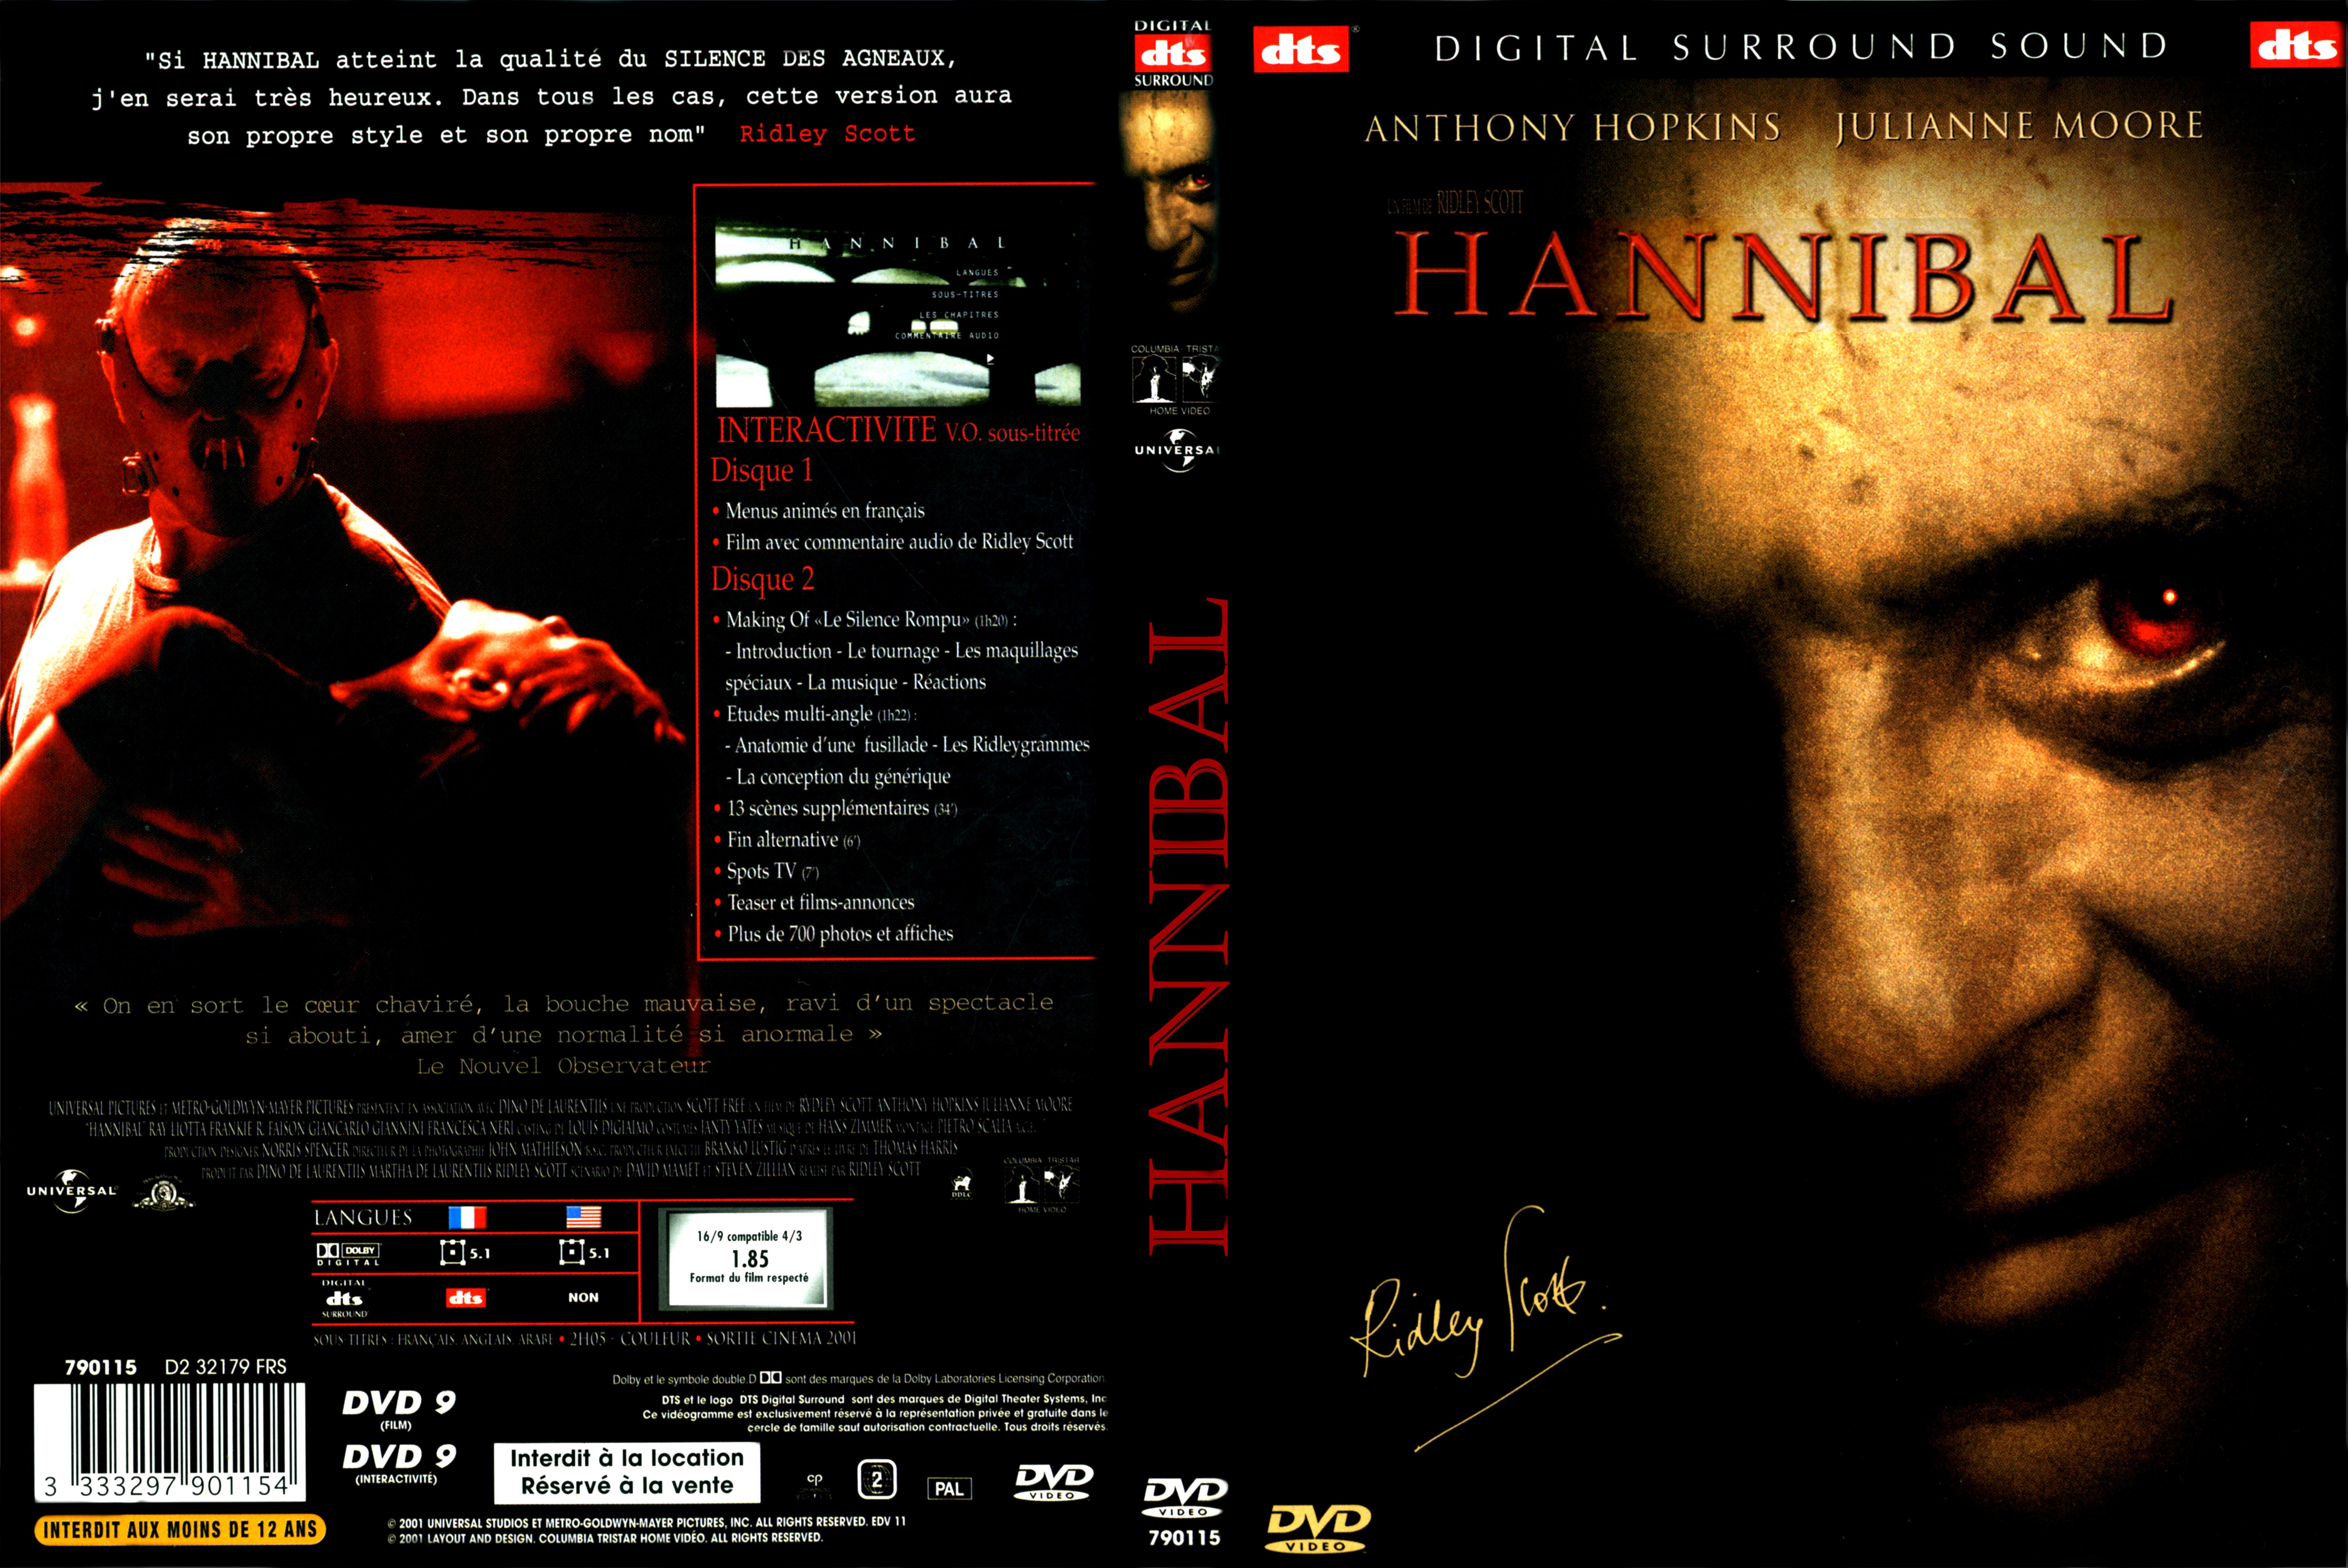 Jaquette DVD Hannibal v3